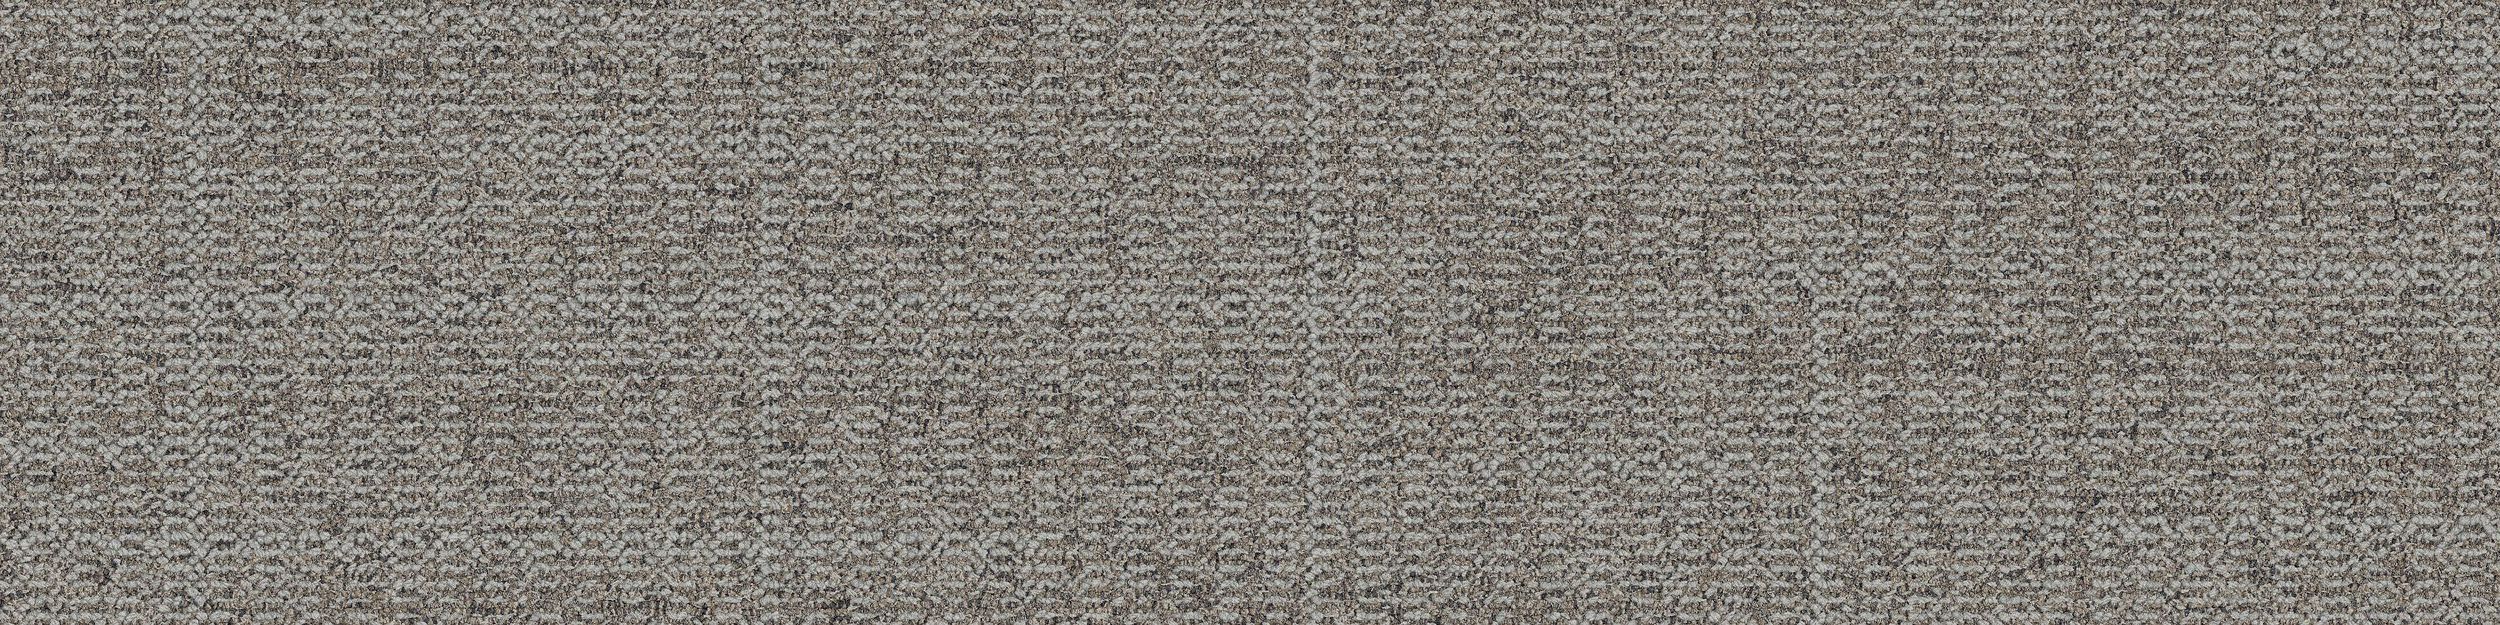 image Open Air 401 Carpet Tile In Stone numéro 2